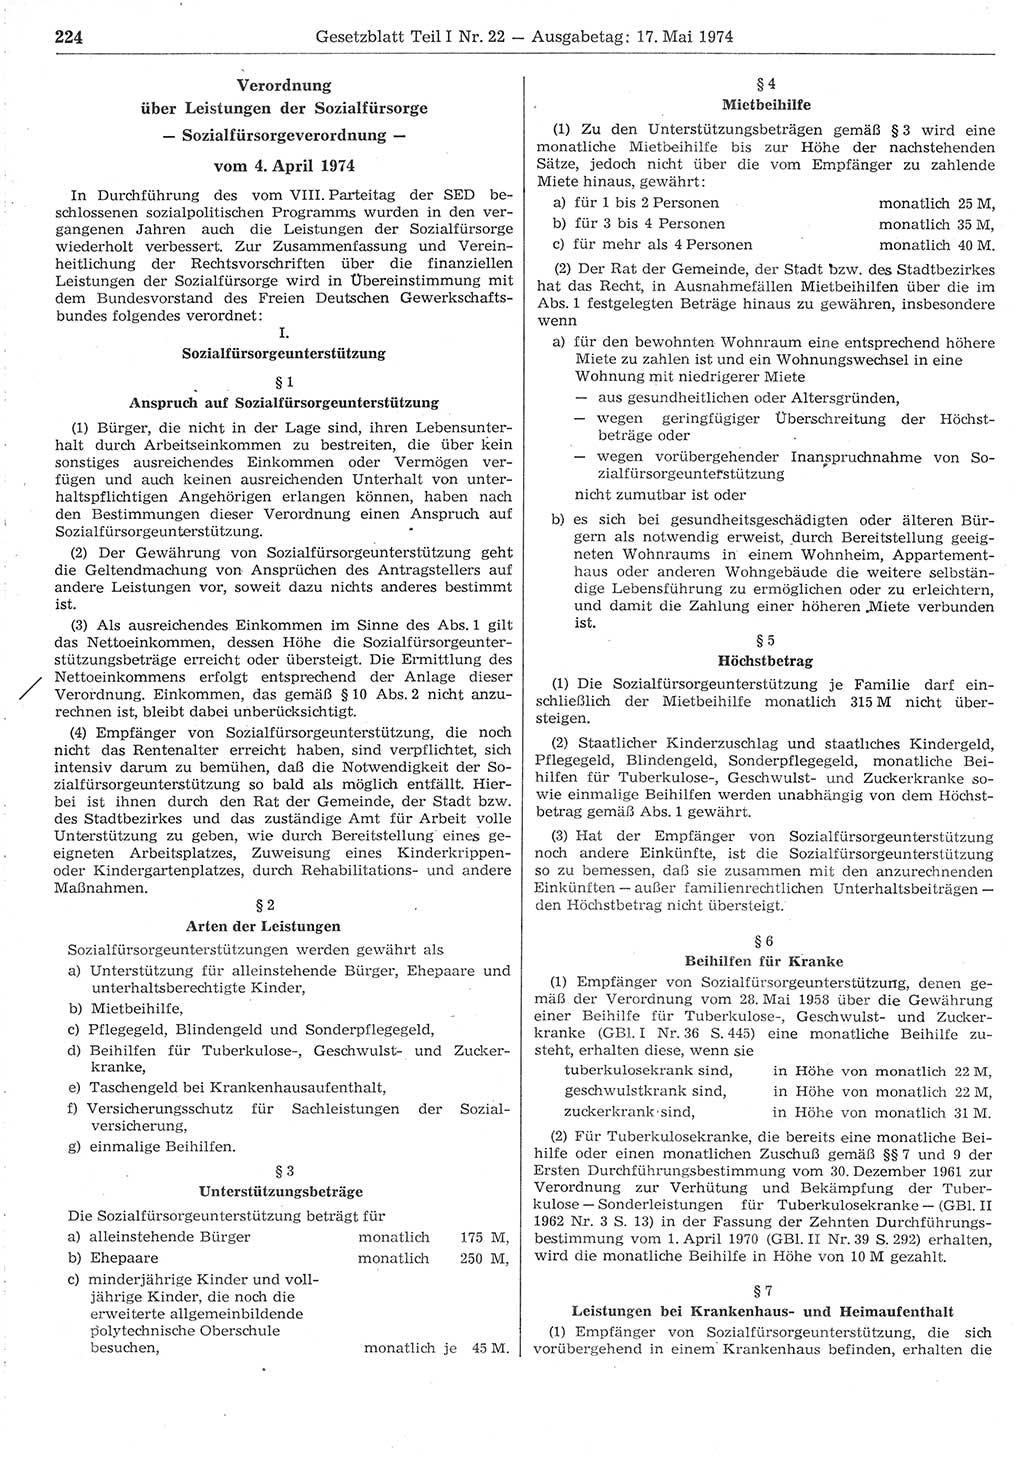 Gesetzblatt (GBl.) der Deutschen Demokratischen Republik (DDR) Teil Ⅰ 1974, Seite 224 (GBl. DDR Ⅰ 1974, S. 224)